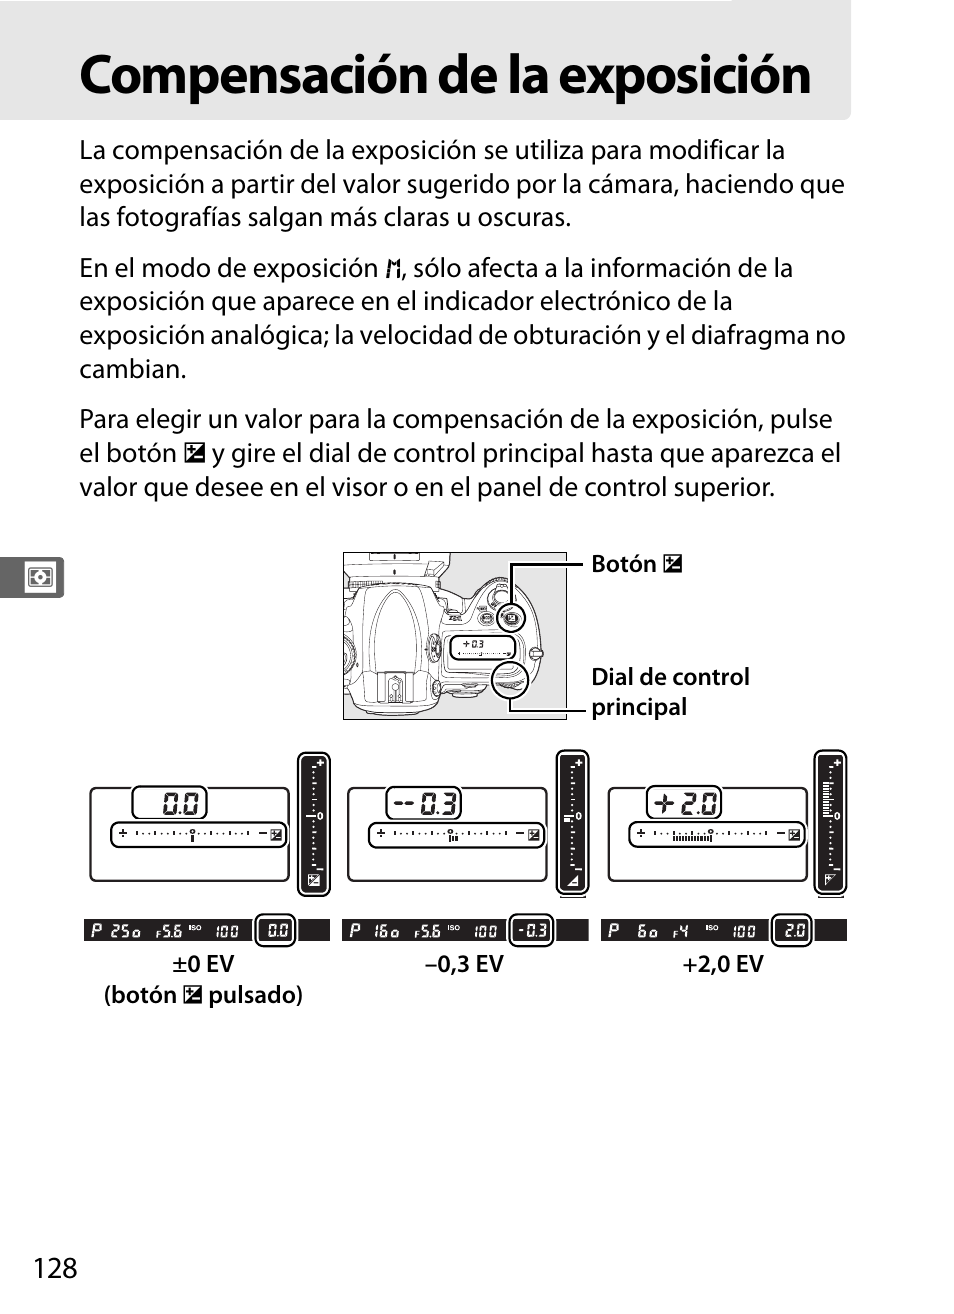 Compensación de la exposición | Nikon D3X Manual del usuario | Página 154 / 476